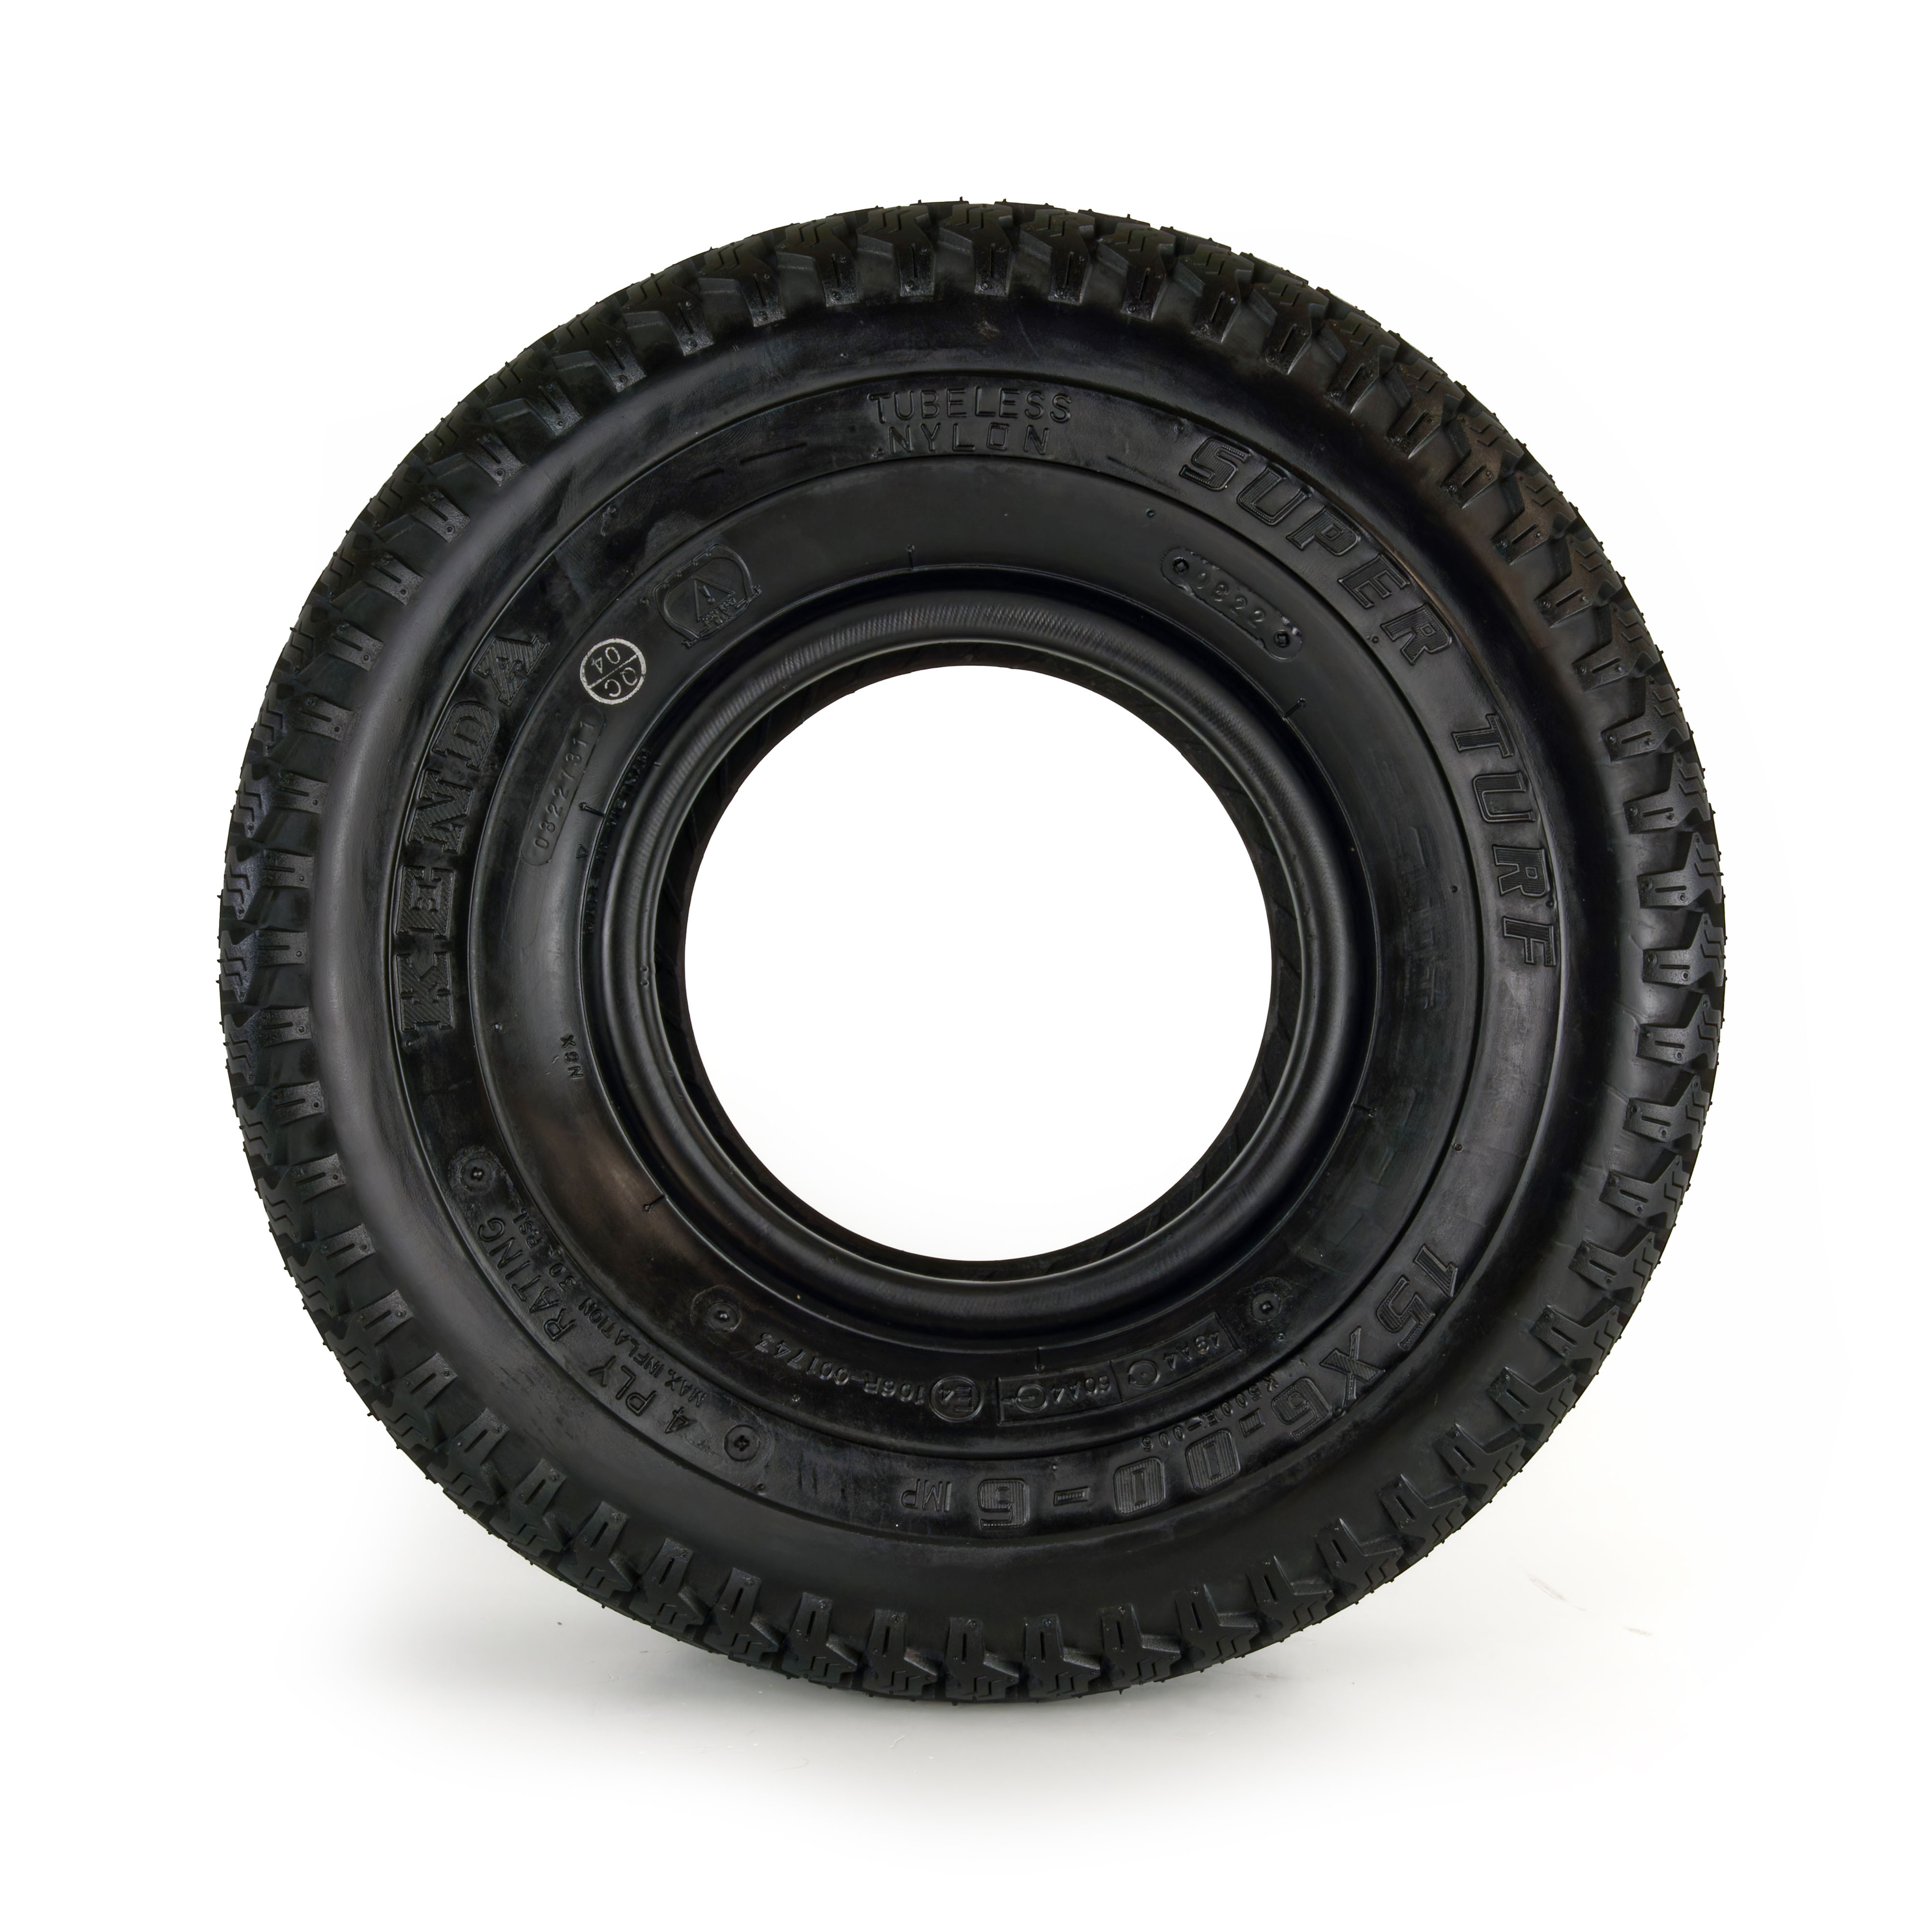 Reifen 15x6.00-6, 4PR, Kenda K500 für Rasentraktor - Seitenansicht